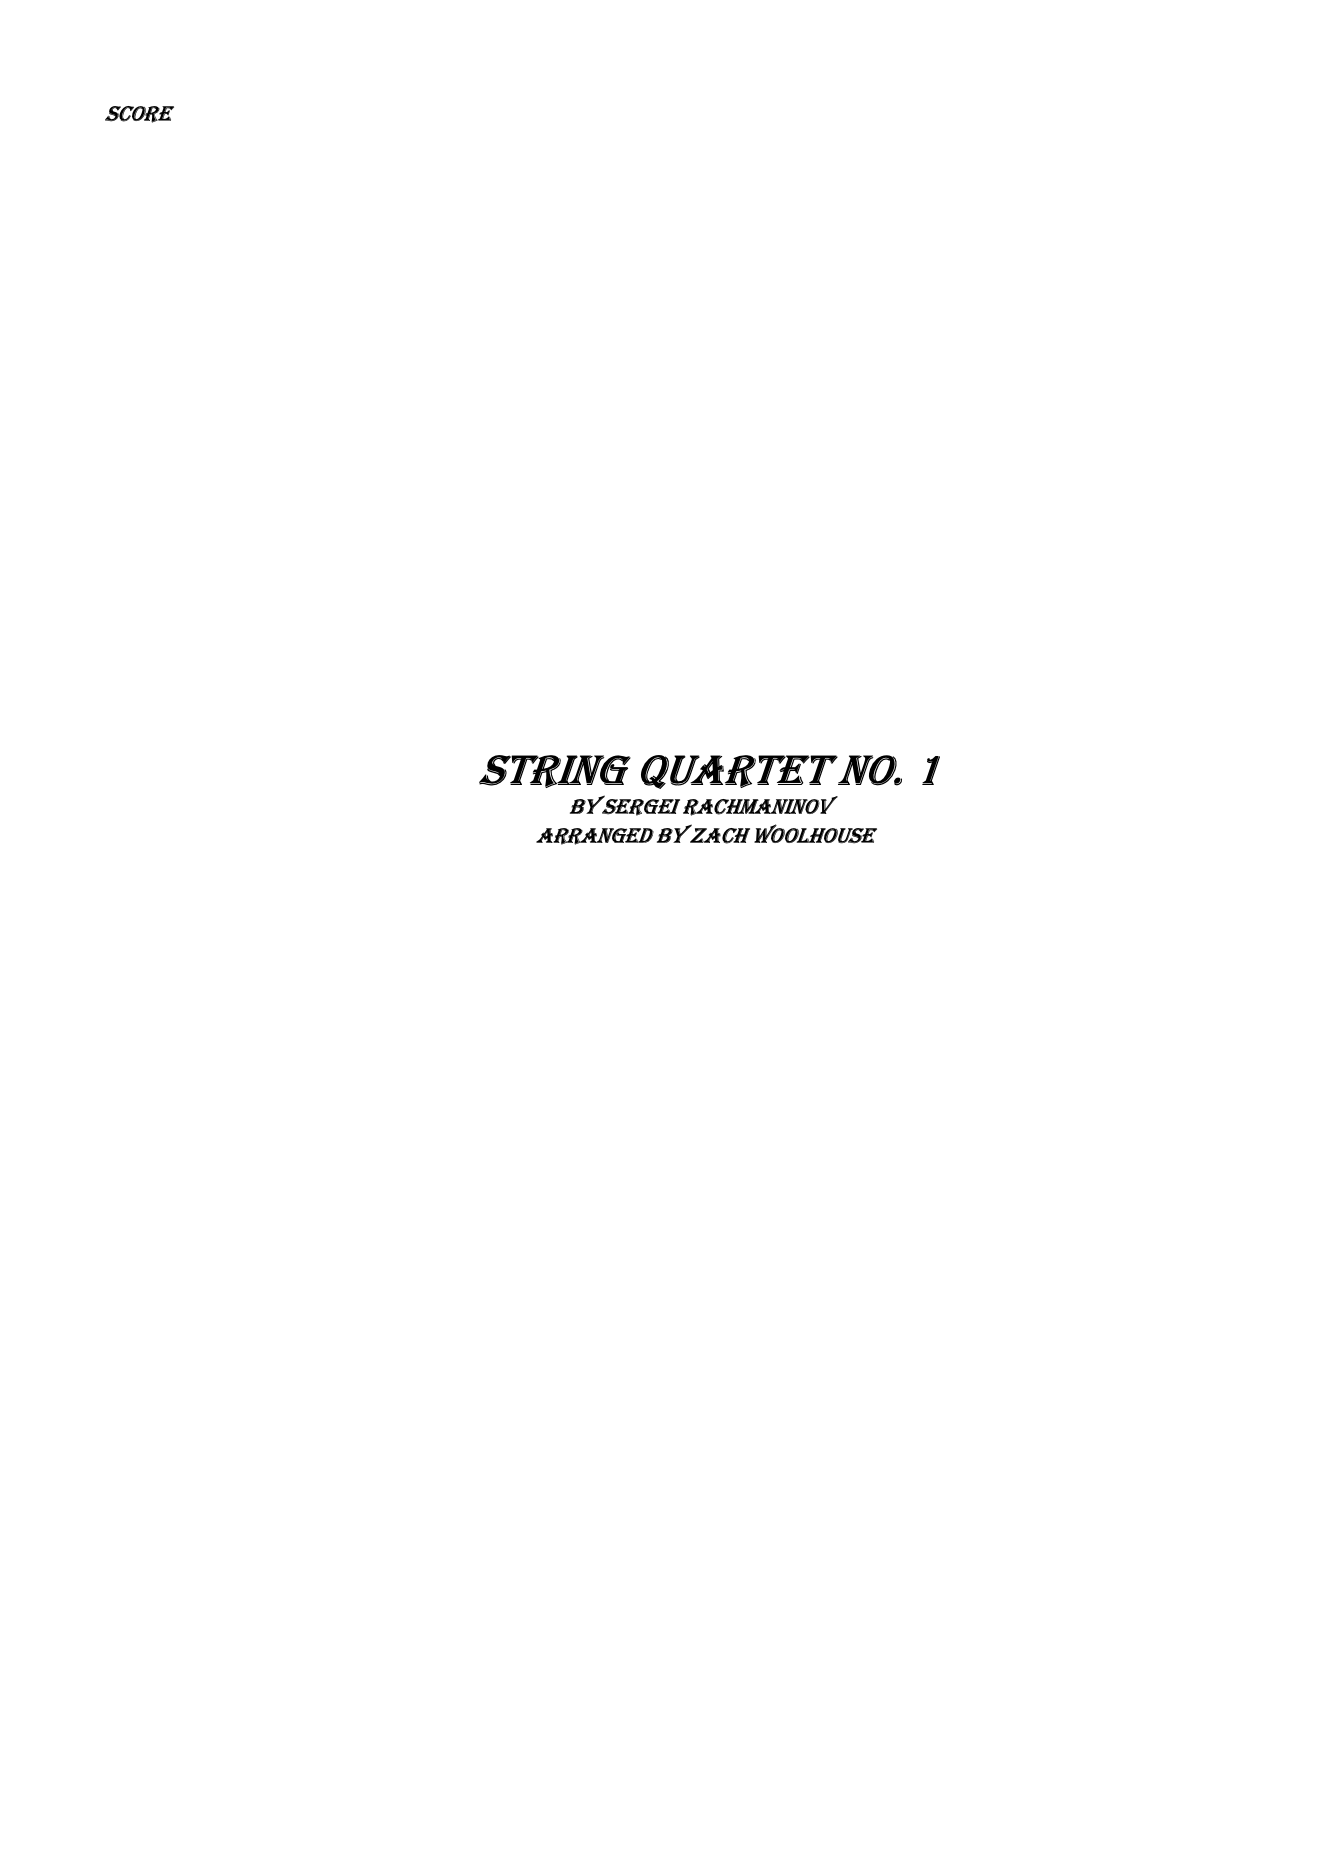 String Quartet No. 1 by Rachmaninov, arr. Woolhouse